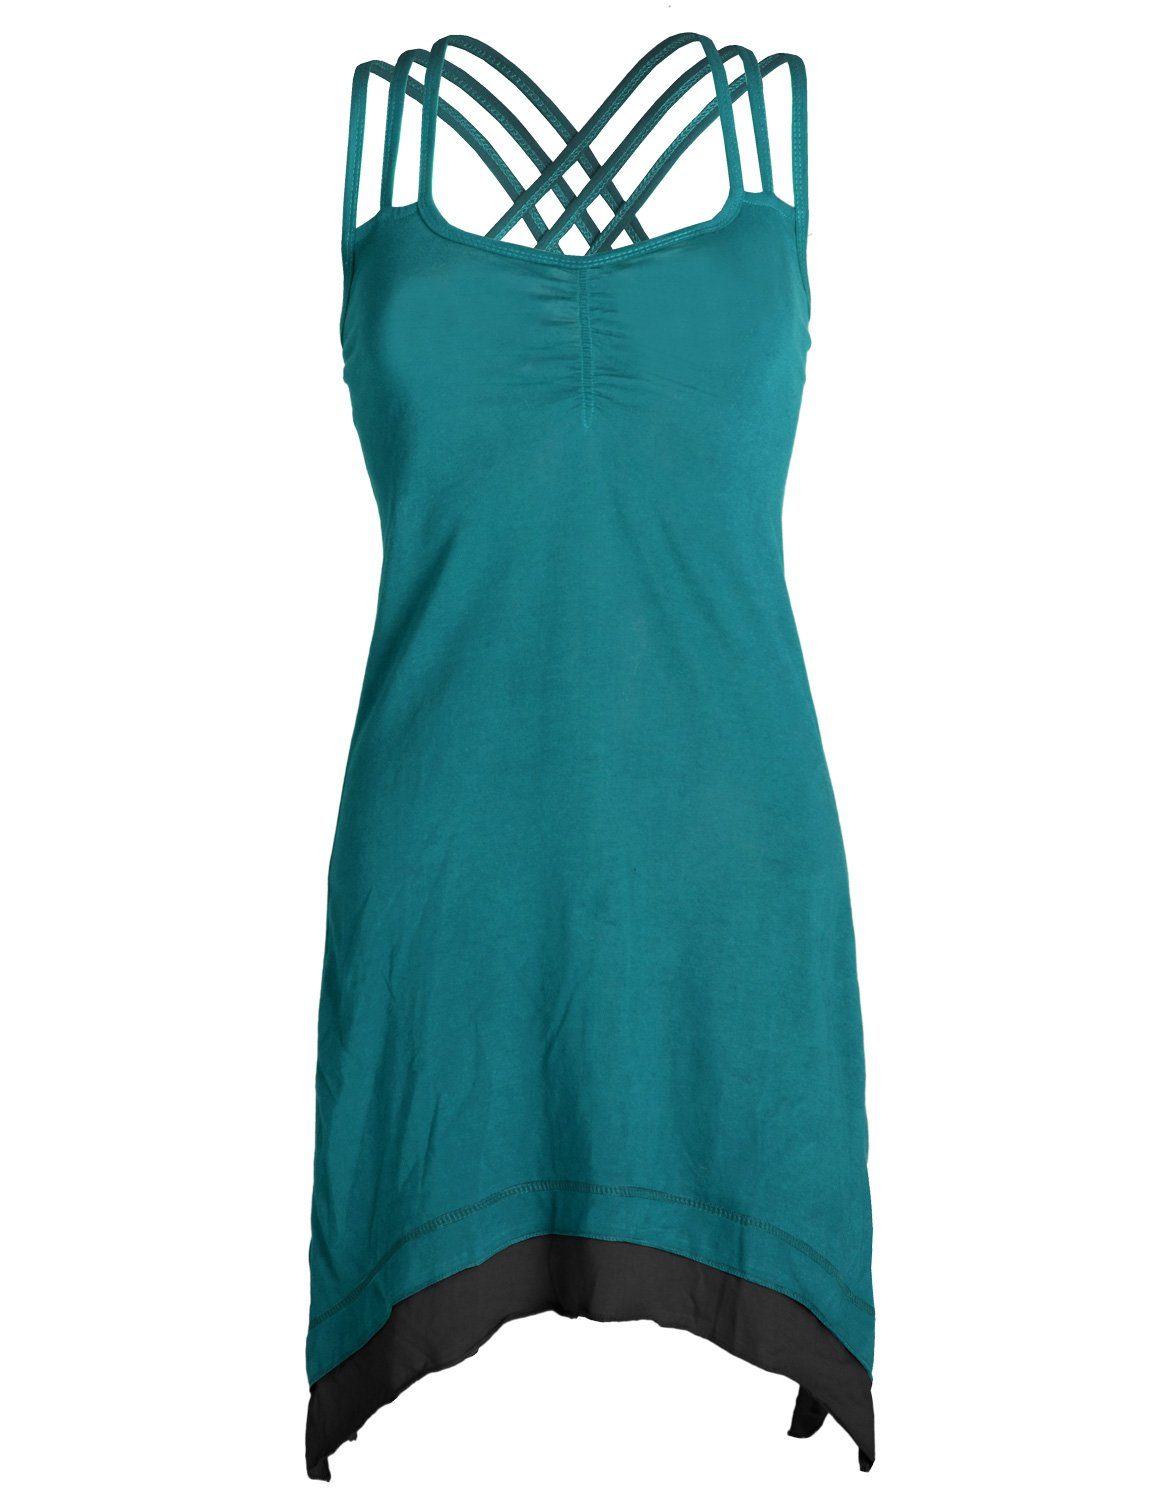 Vishes Sommerkleid mit Organic Zipfeln Lagenlook türkis Cotton Elfen, Style Boho Trägerkleid Hippie